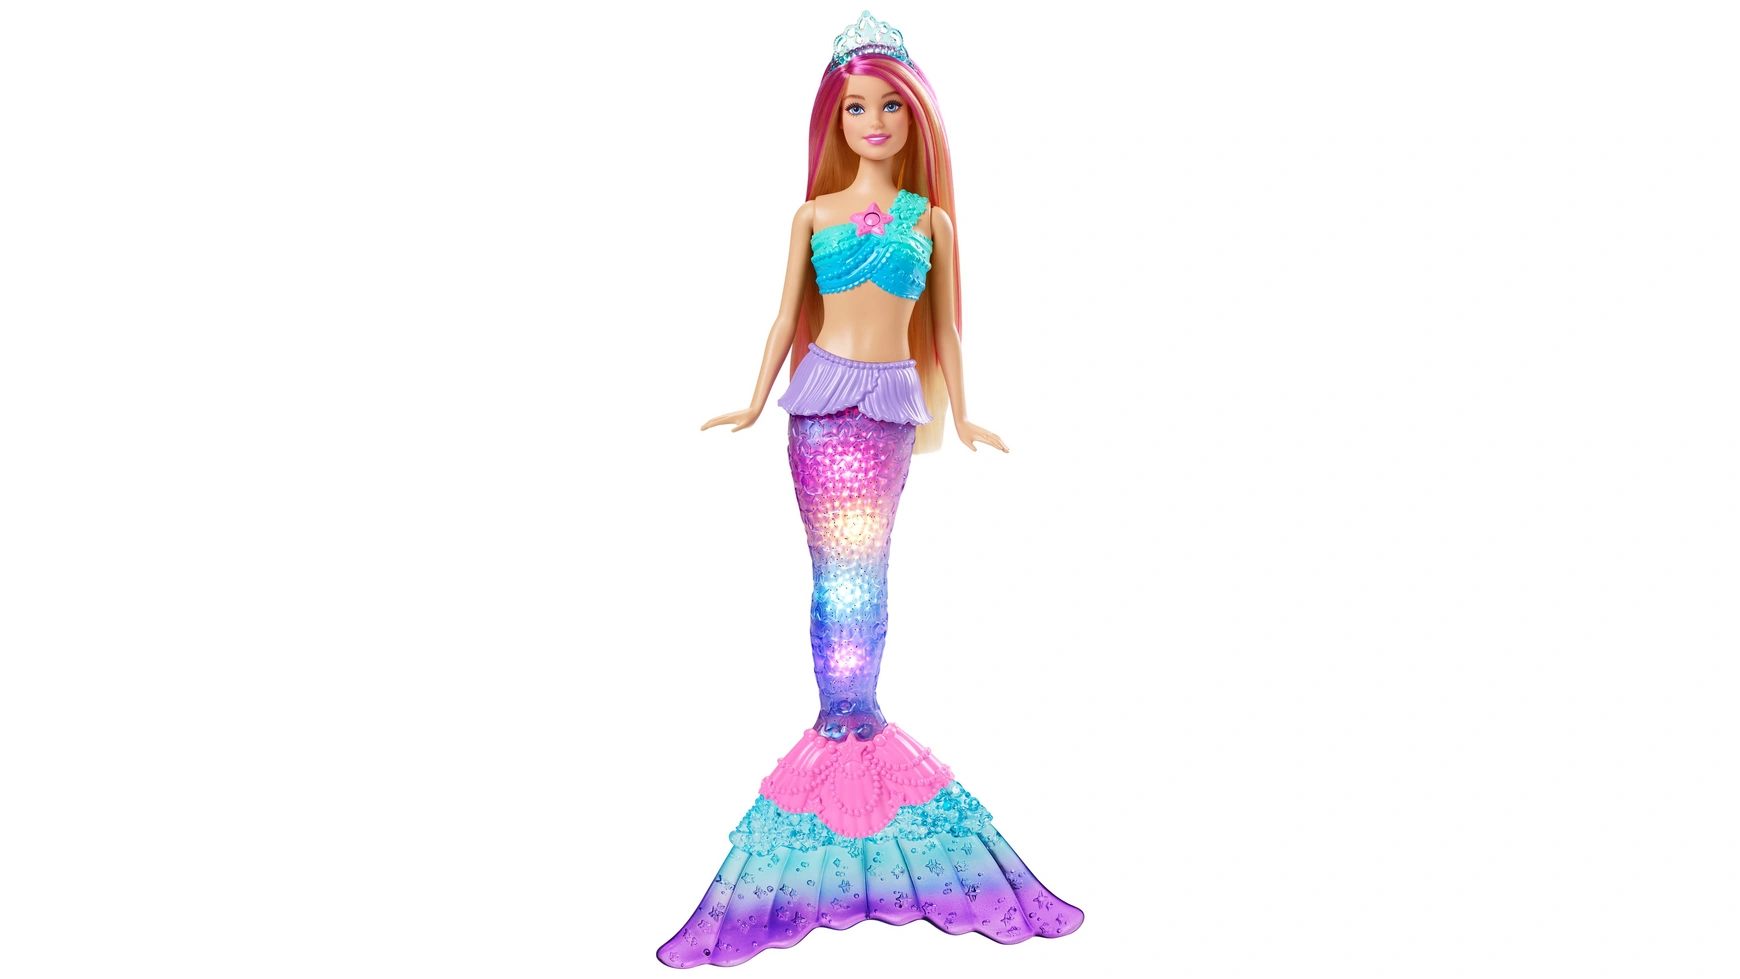 Кукла Barbie Волшебная светящаяся русалка (загорается), Barbie Dreamtopia пазл 104 эл барби волшебная радуга